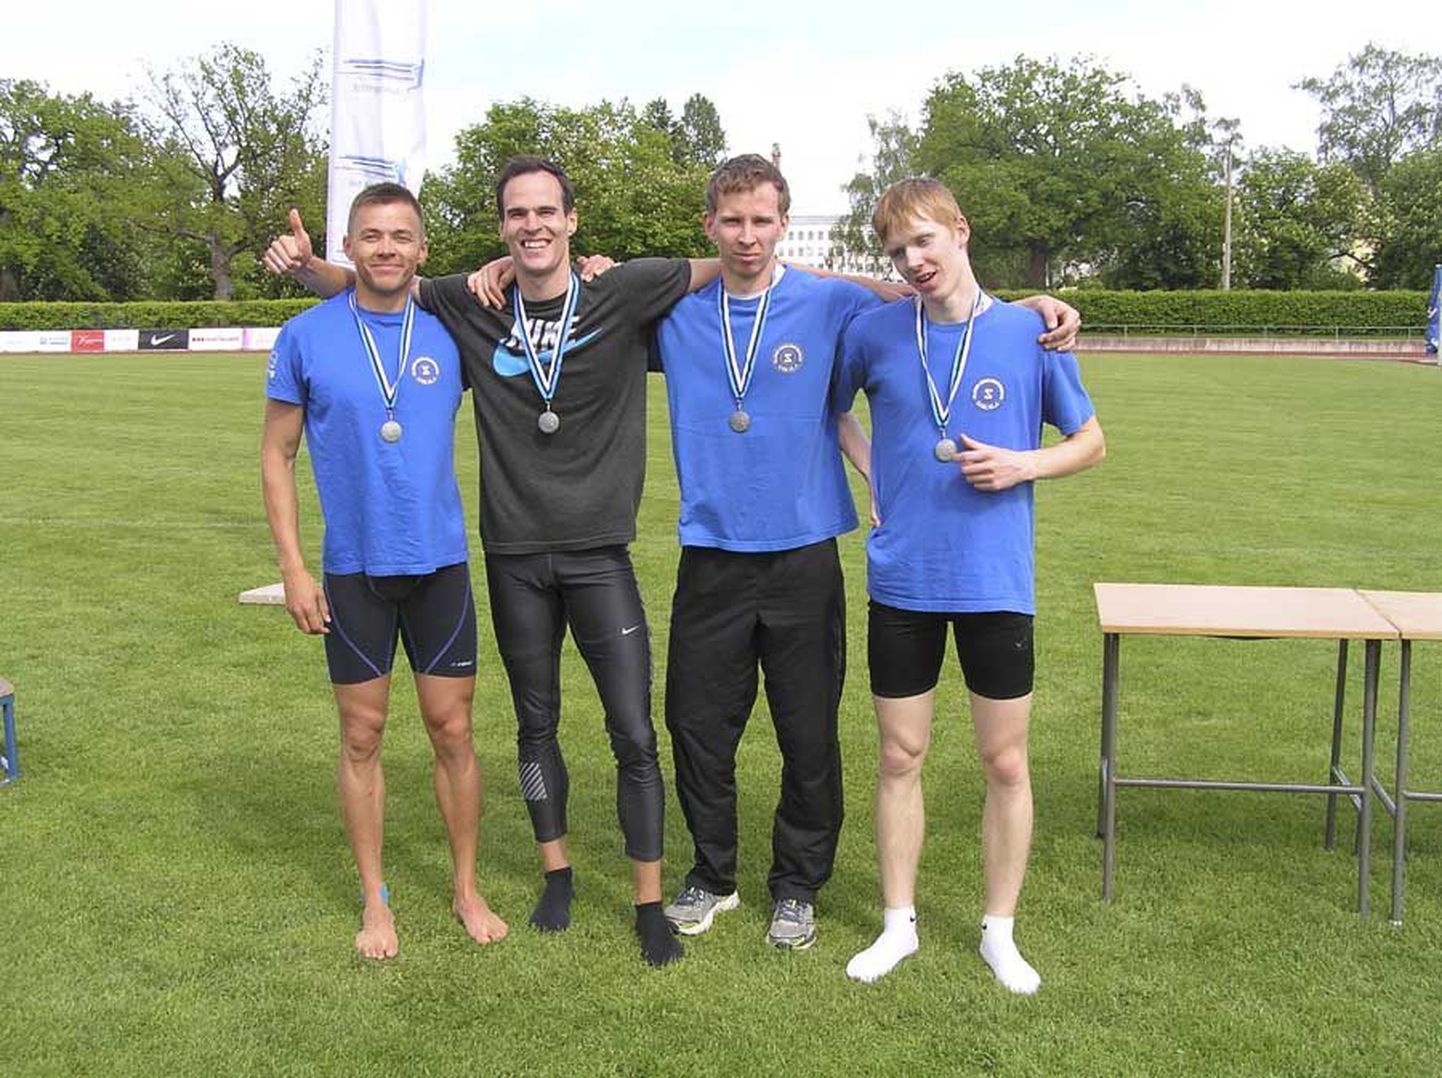 Viljandimaa kergejõustikuseltsi Sakala nelik teenis uue maakonna 4 x 400 meetri teatejooksu rekordiga Eesti meistrivõistlustel hõbemedali.